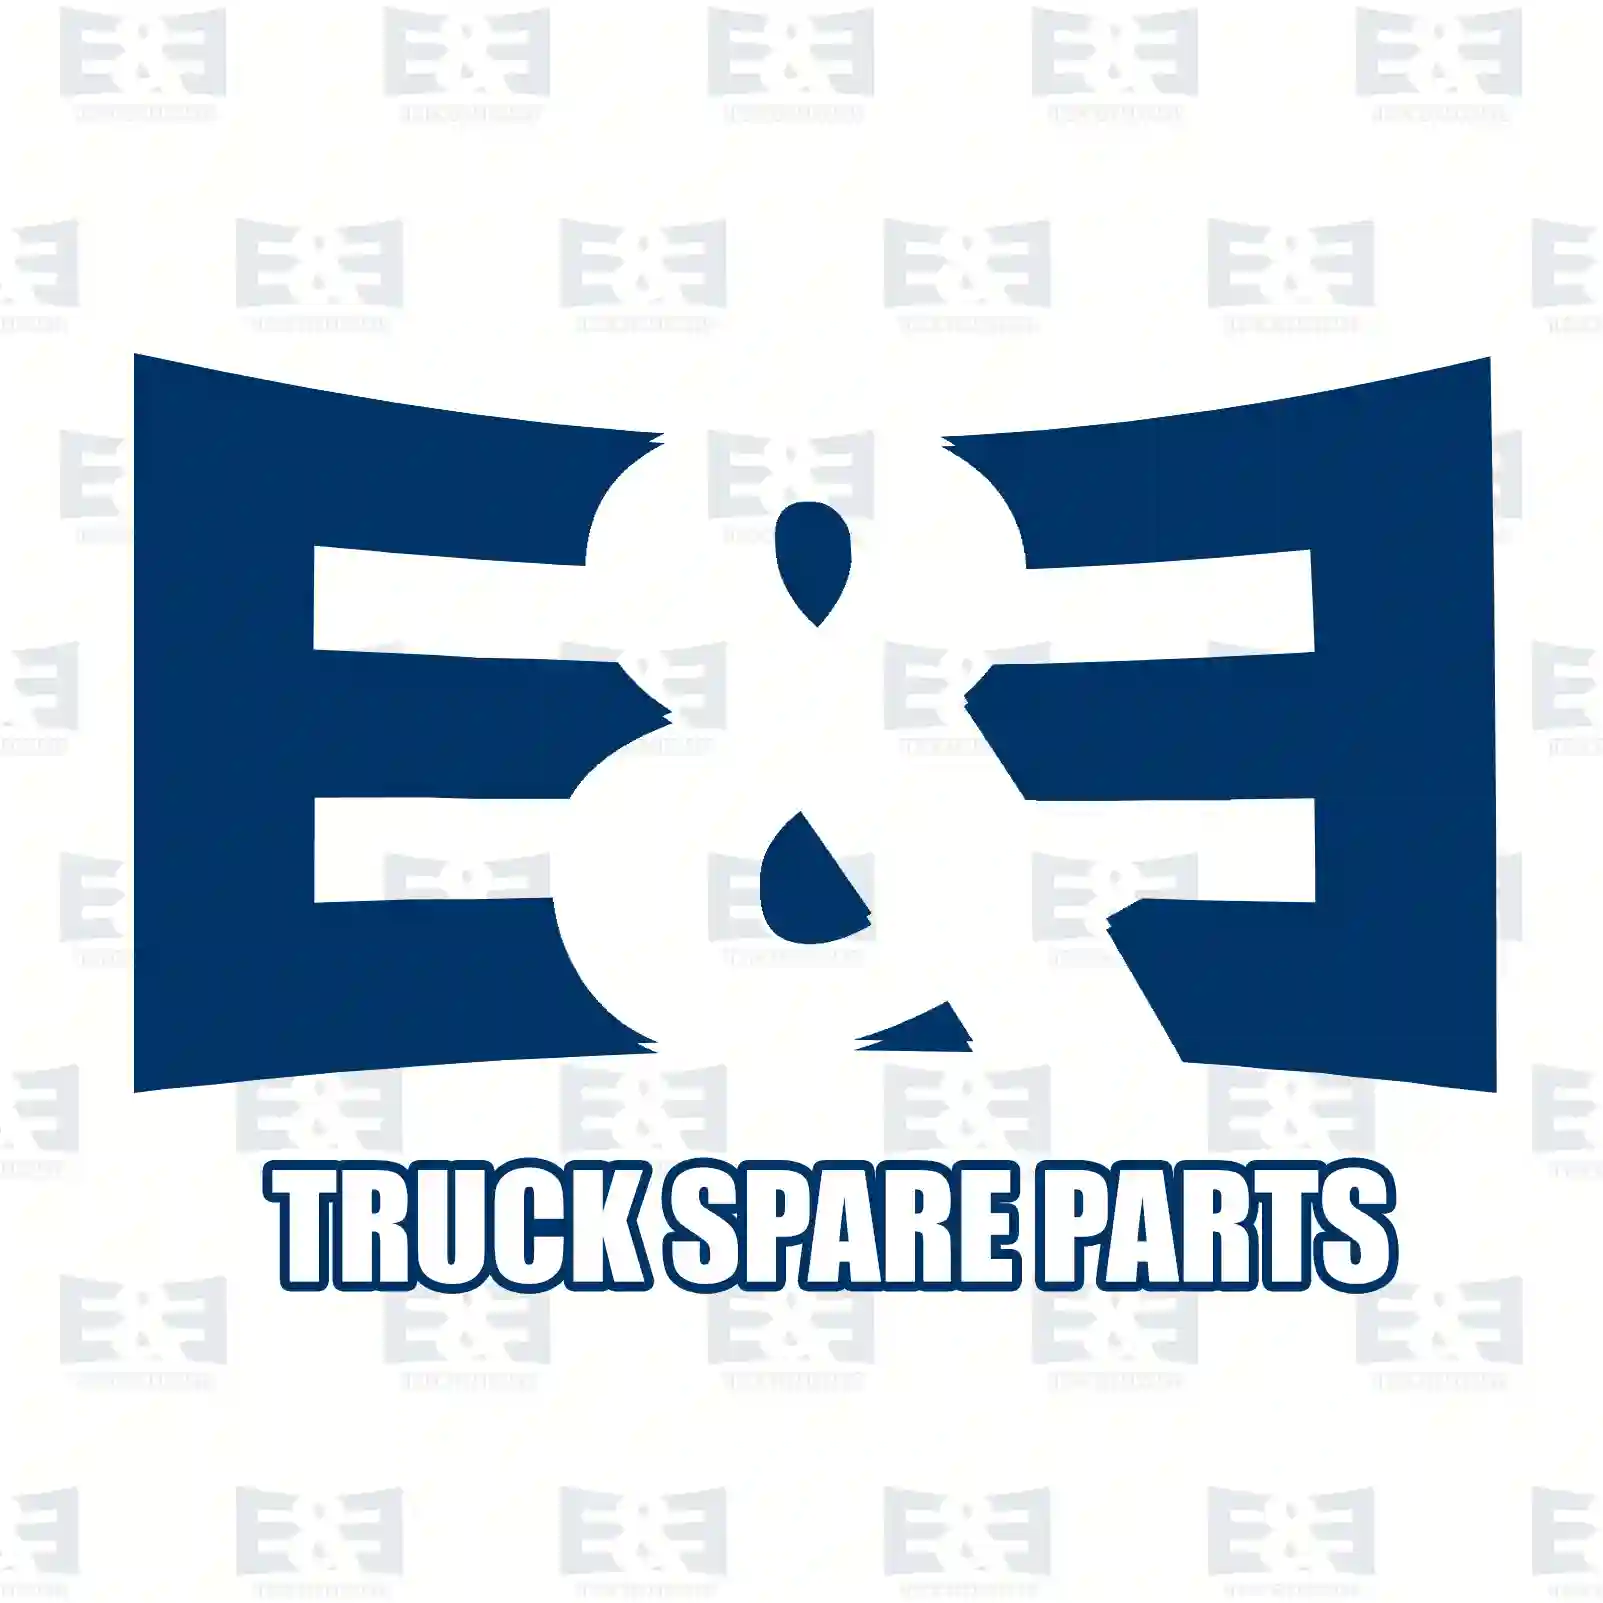 Cover, bumper, left, 2E2292925, 81416850095 ||  2E2292925 E&E Truck Spare Parts | Truck Spare Parts, Auotomotive Spare Parts Cover, bumper, left, 2E2292925, 81416850095 ||  2E2292925 E&E Truck Spare Parts | Truck Spare Parts, Auotomotive Spare Parts